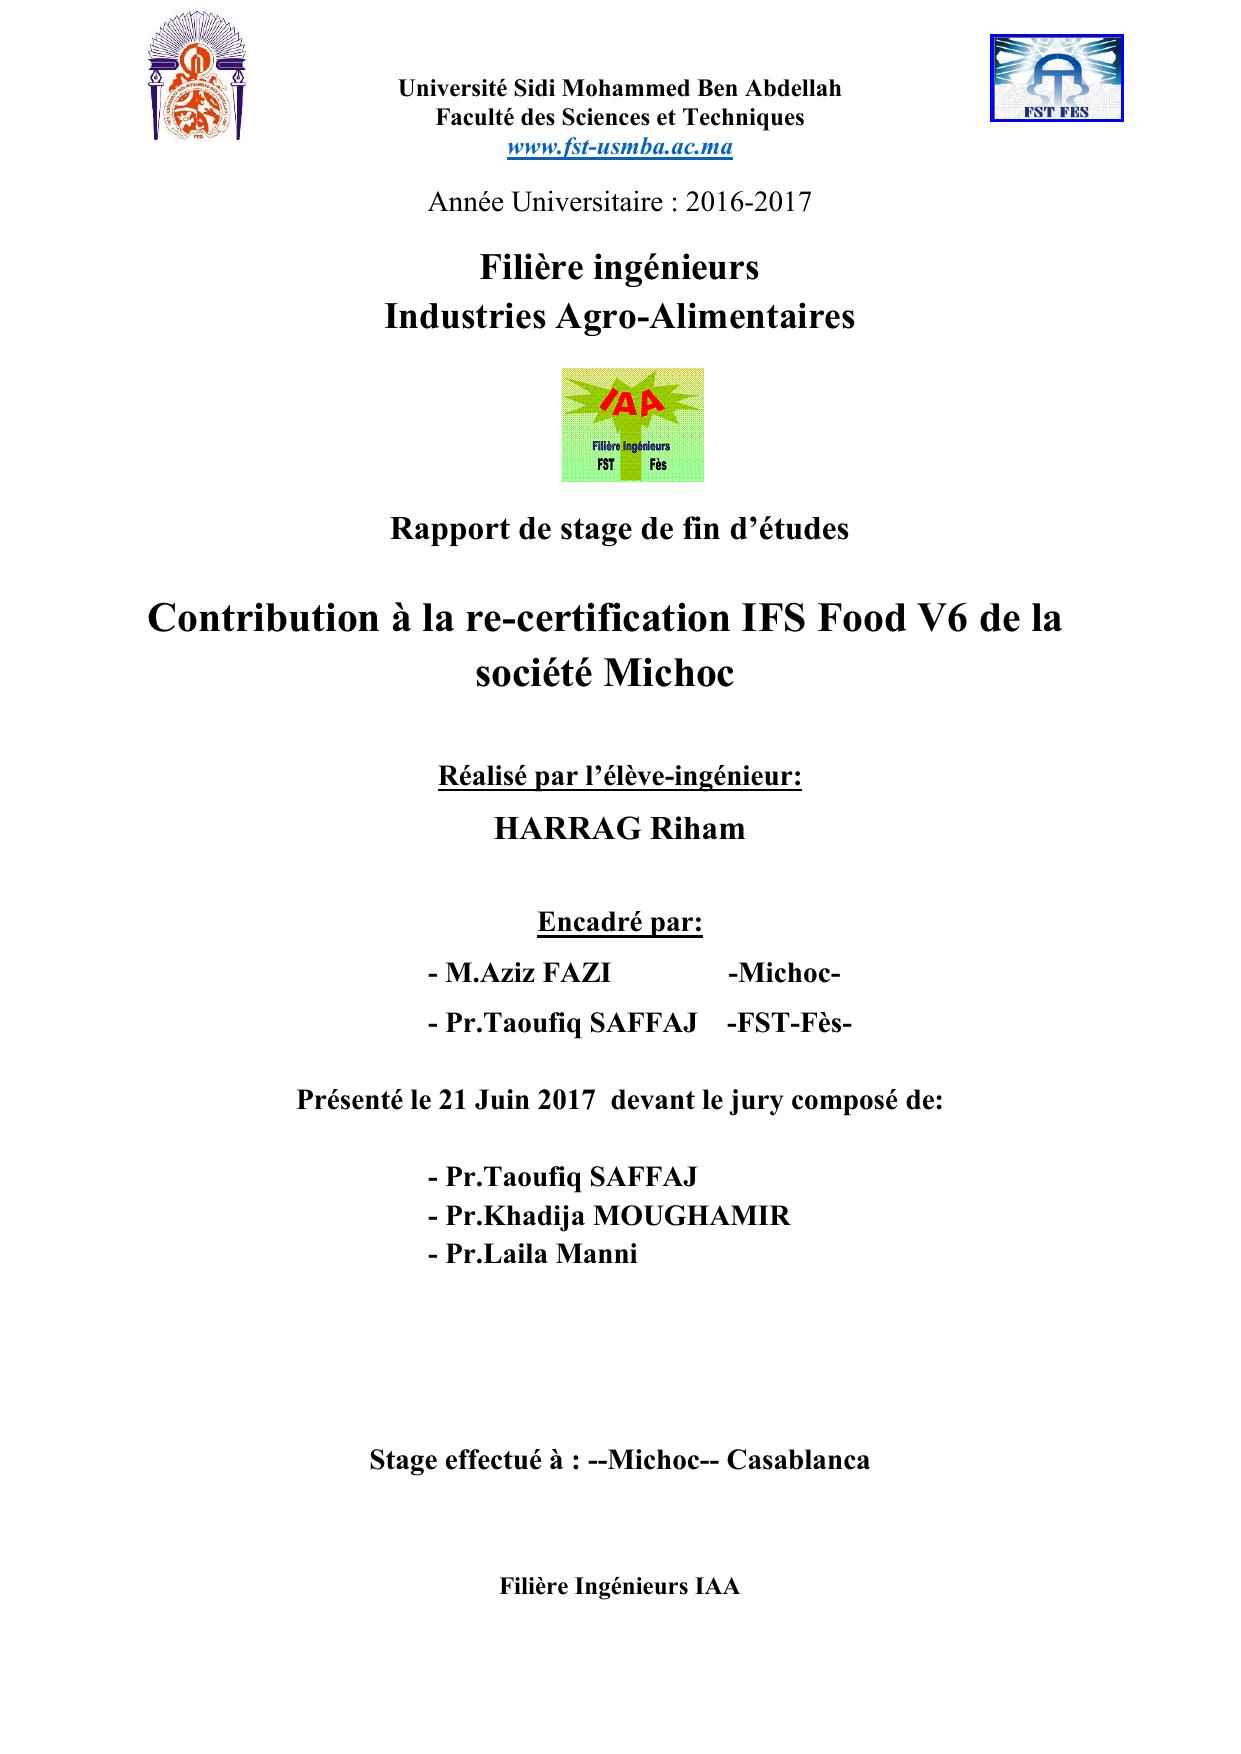 Contribution à la re-certification IFS Food V6 de la société Michoc